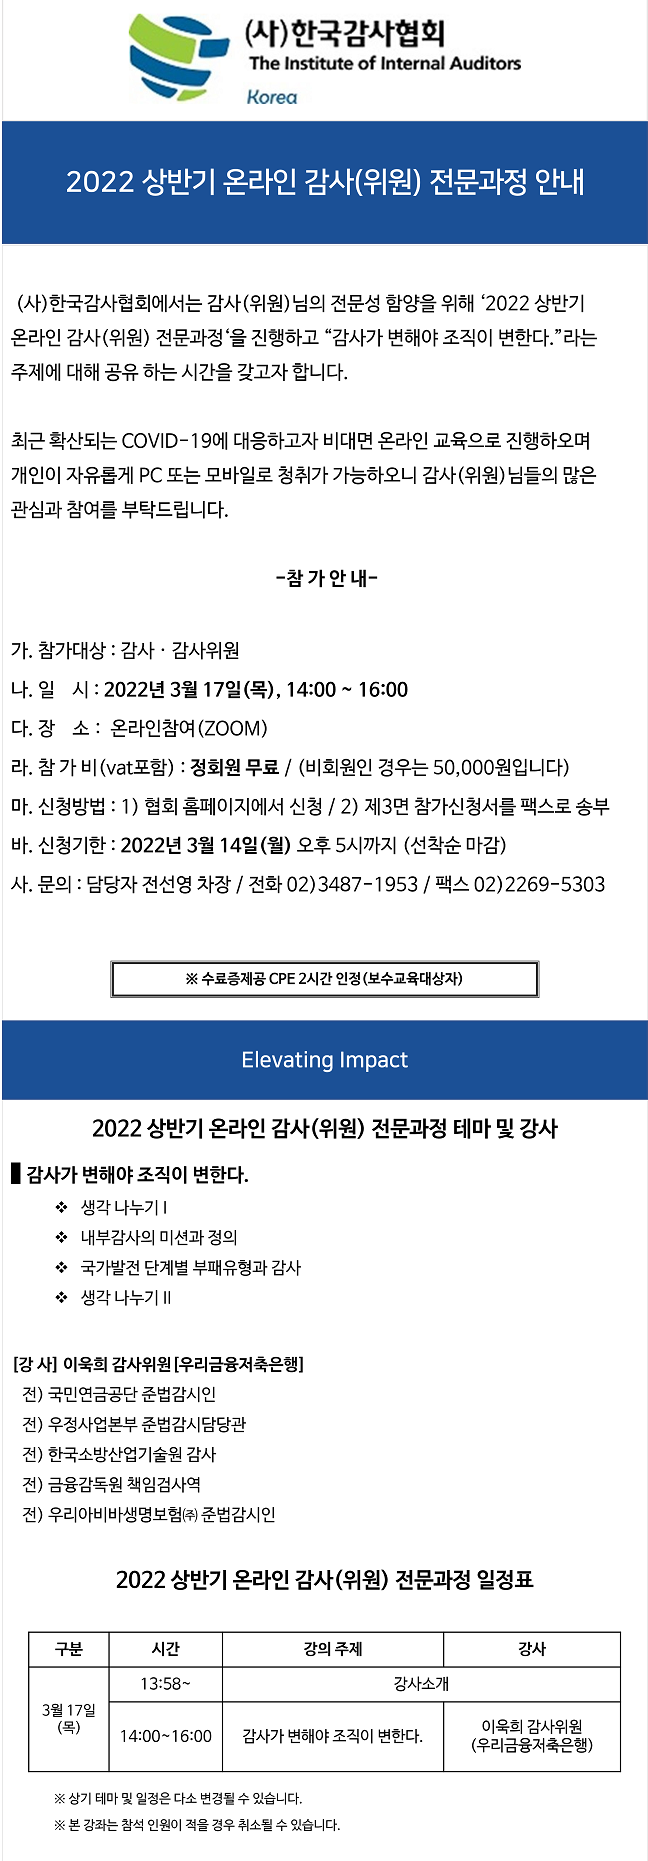 2022 상반기 온라인 감사(위원) 전문과정_수정.png